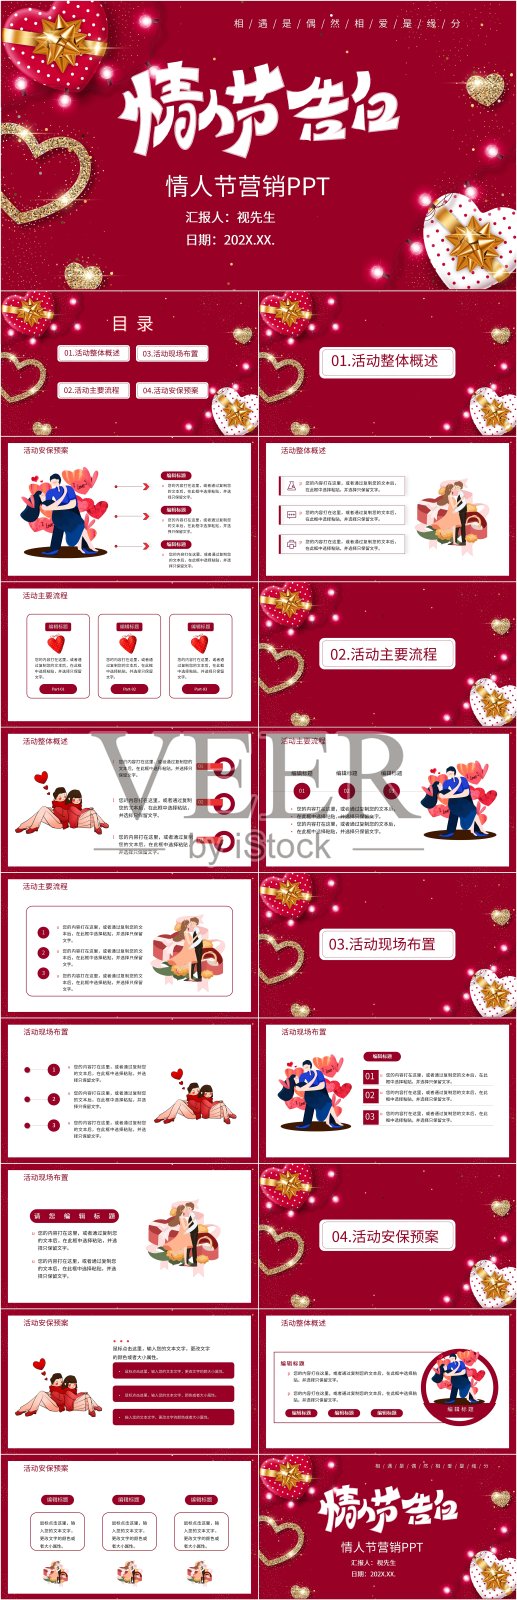 红色浪漫情人节营销PPT设计模板素材